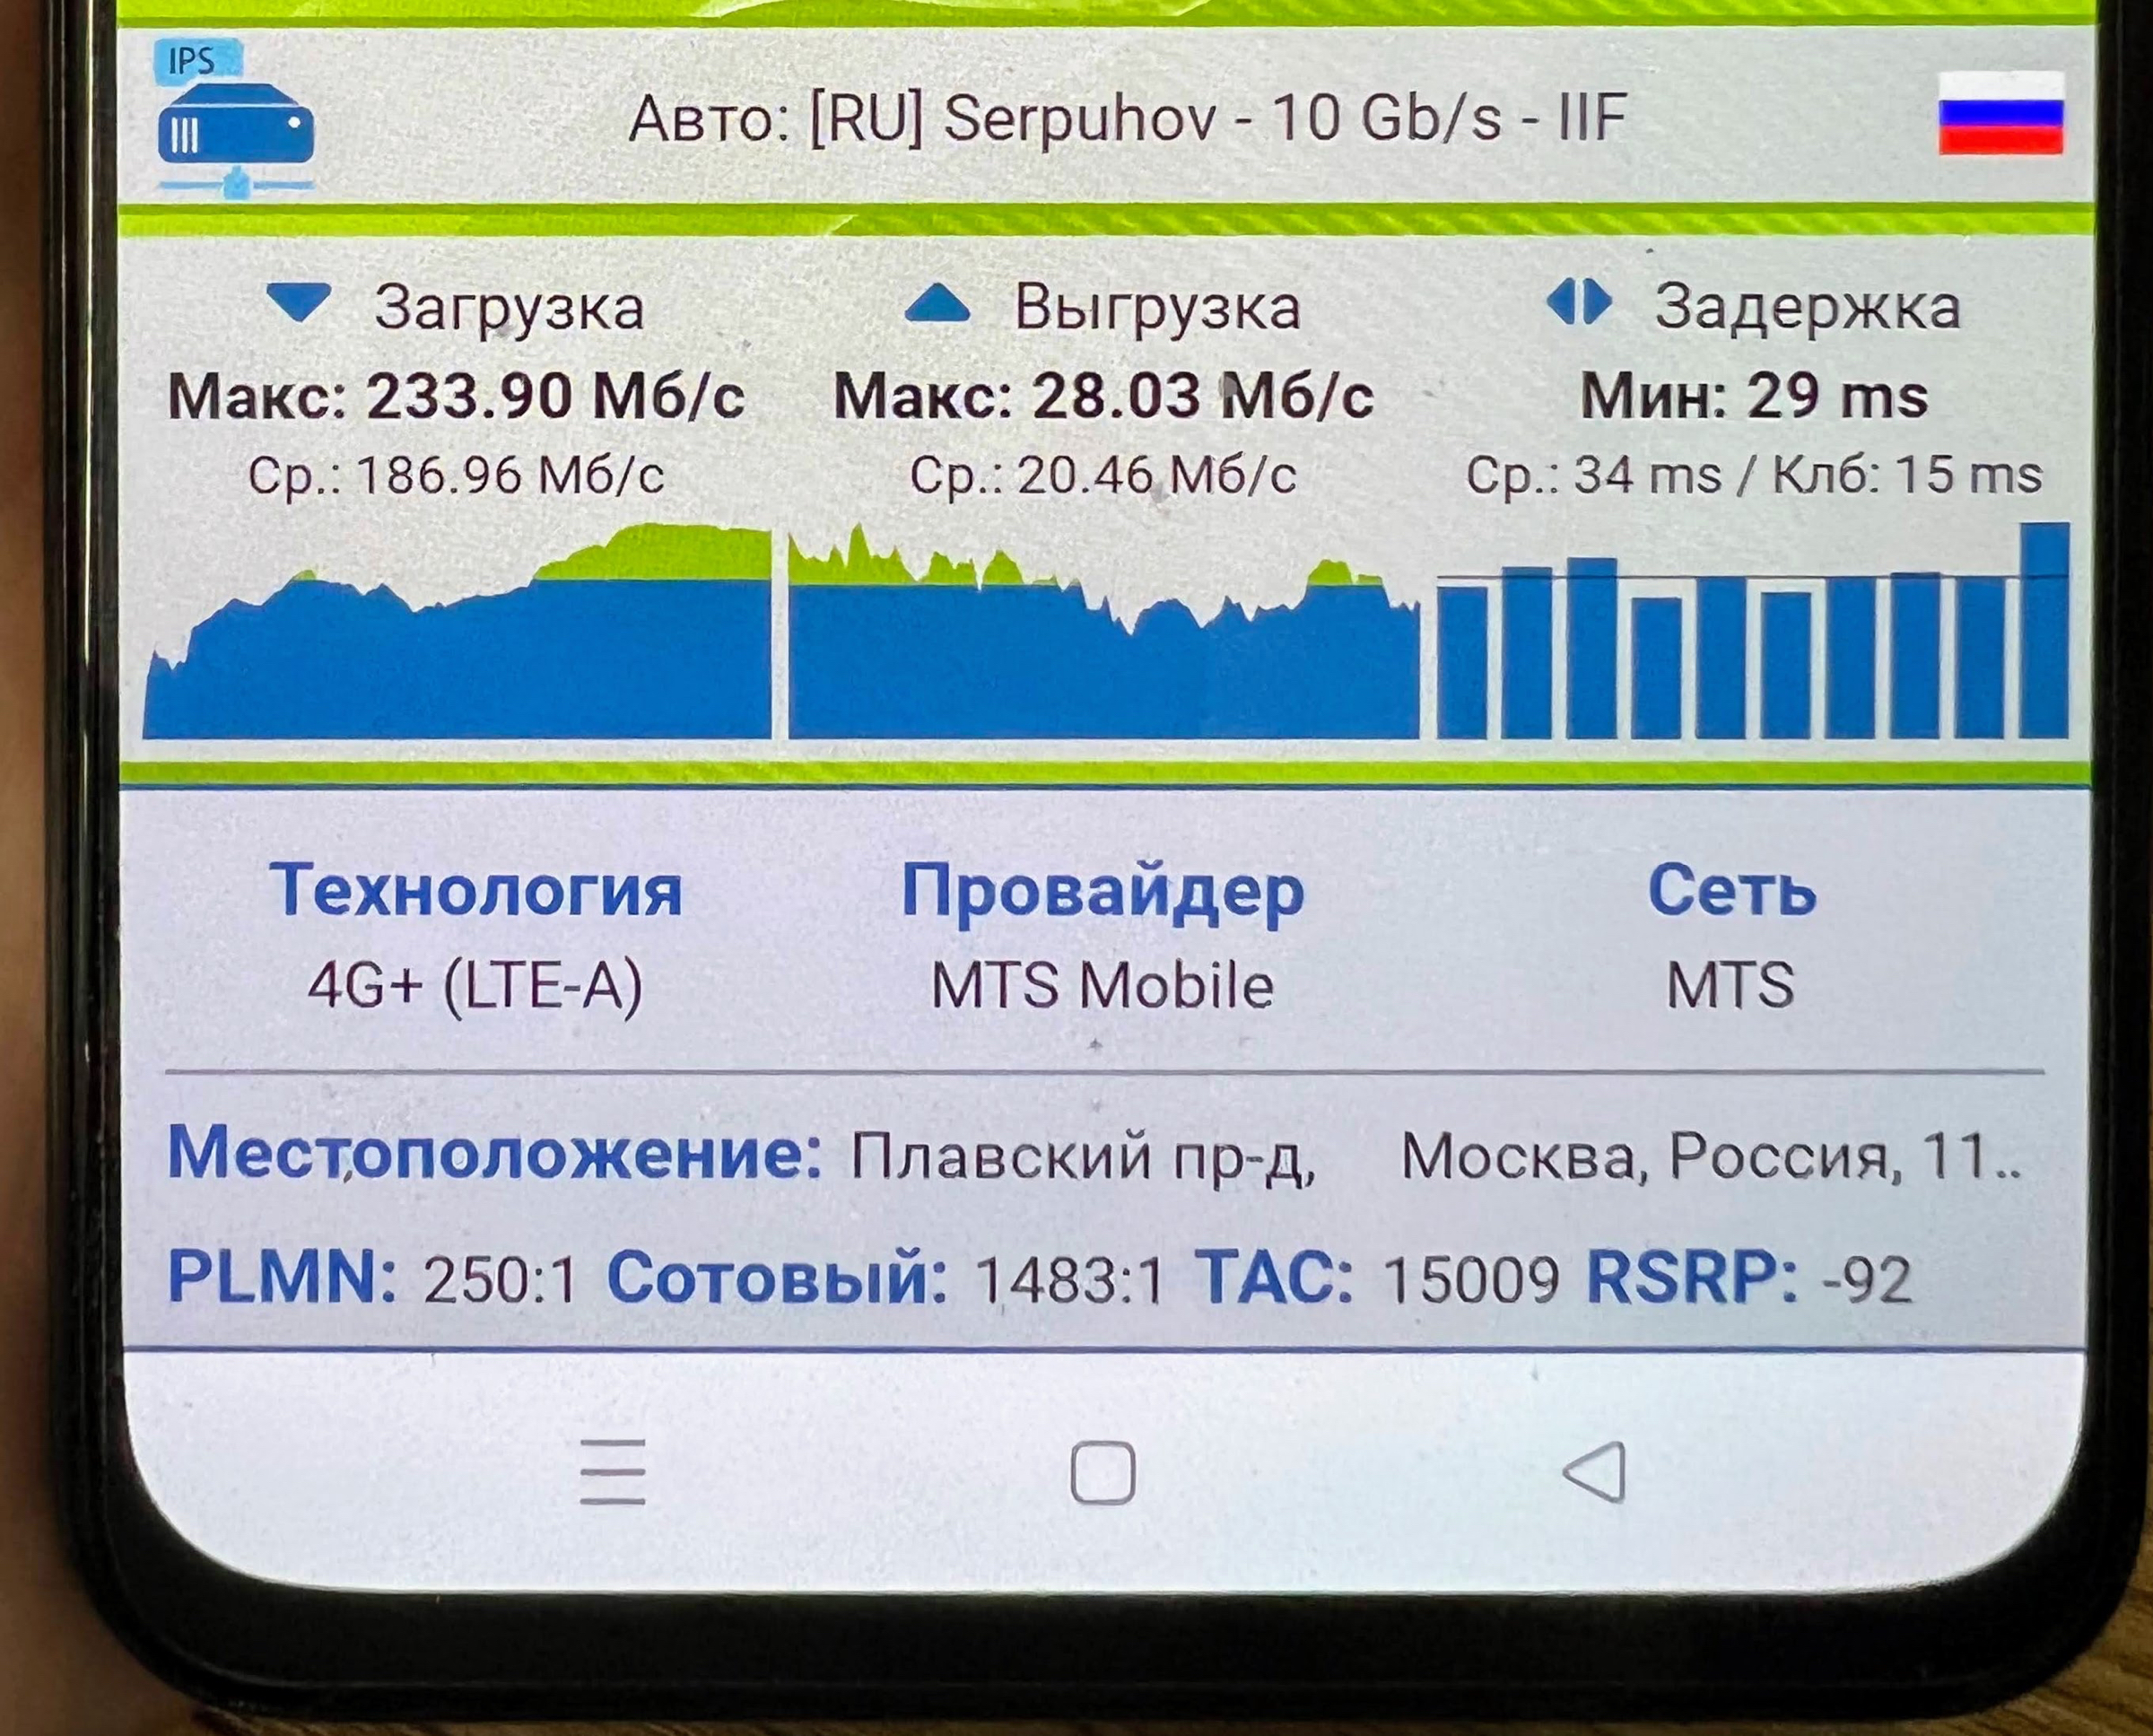 800 мегабит в секунду в московской сети МТС: мифы и реальность5